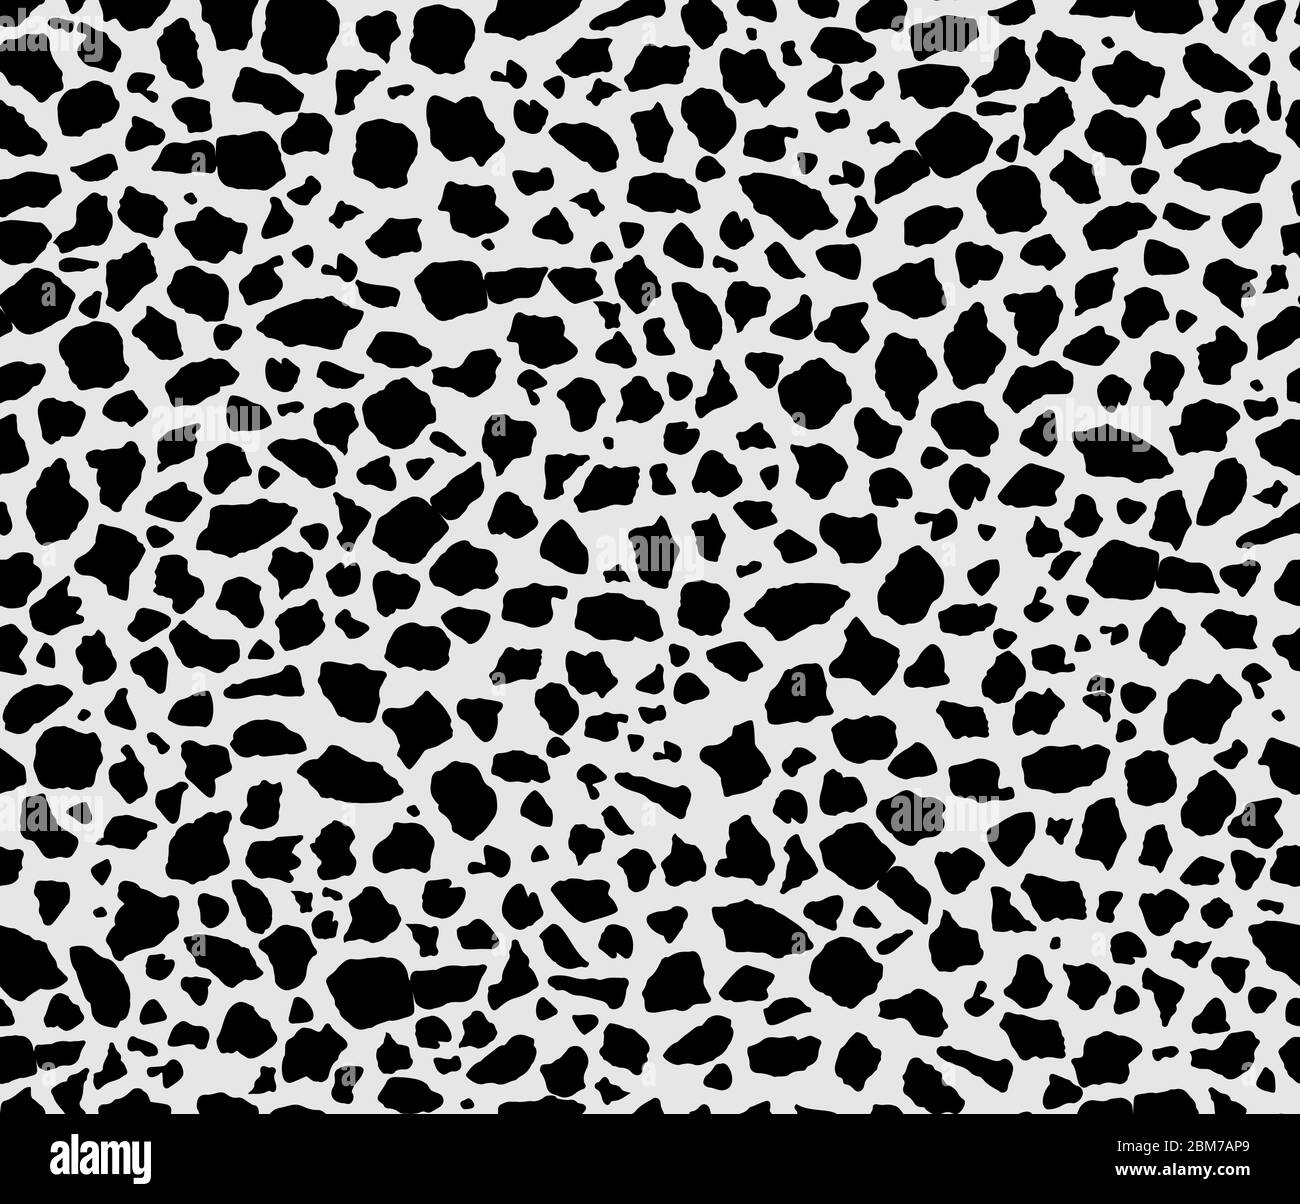 Tierdruck Nahtloses Muster in schwarz und weiß. Vektor-Muster inspiriert von Giraffen Spots. Stock Vektor